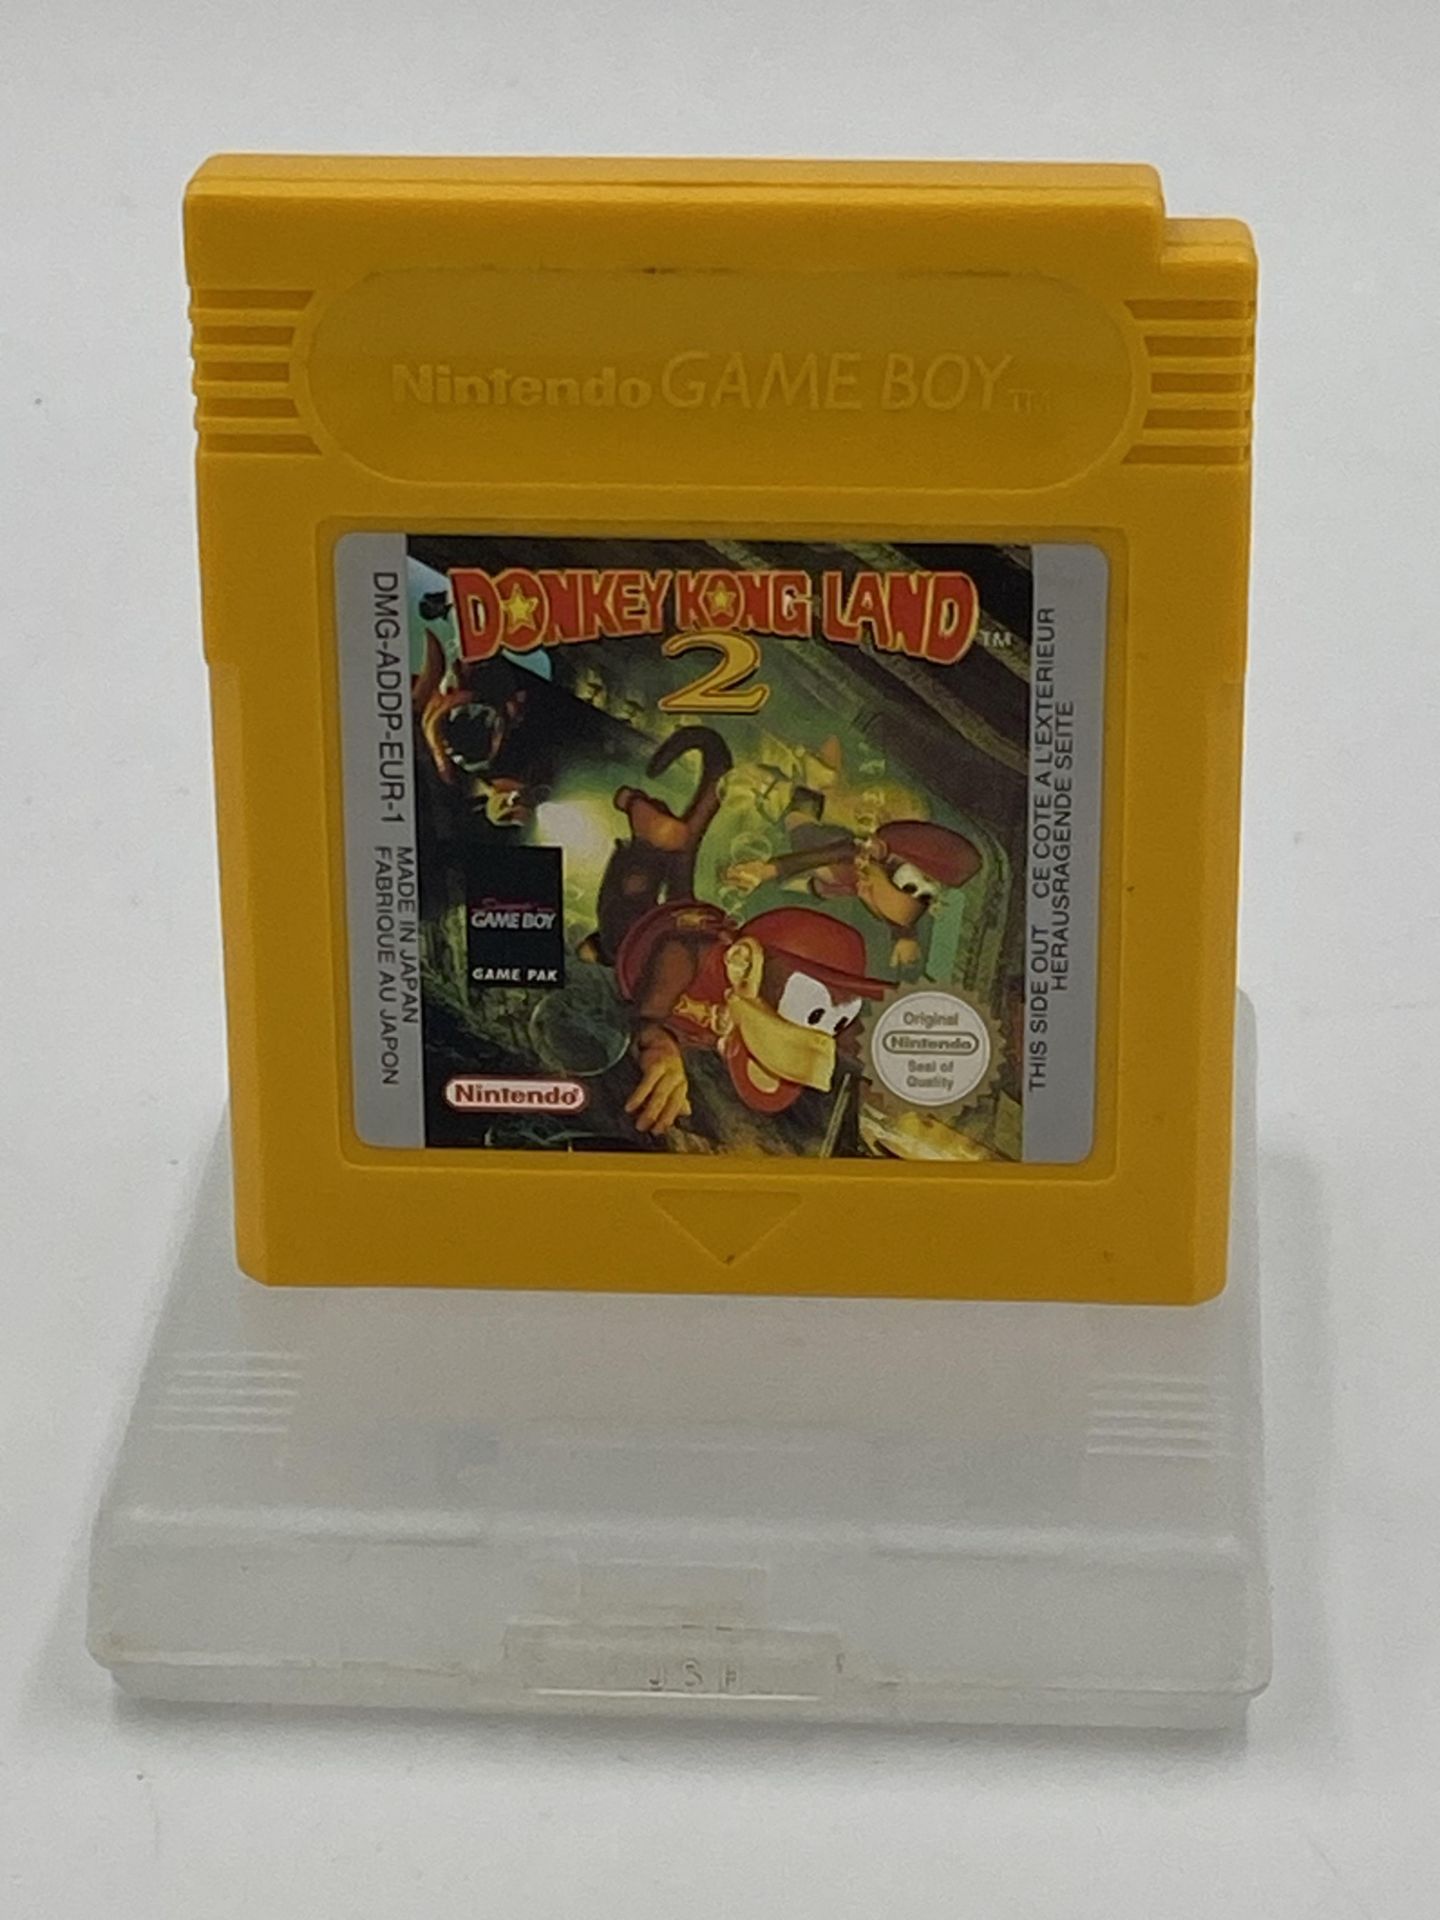 Nintendo Game Boy Donkey Kong Land 2